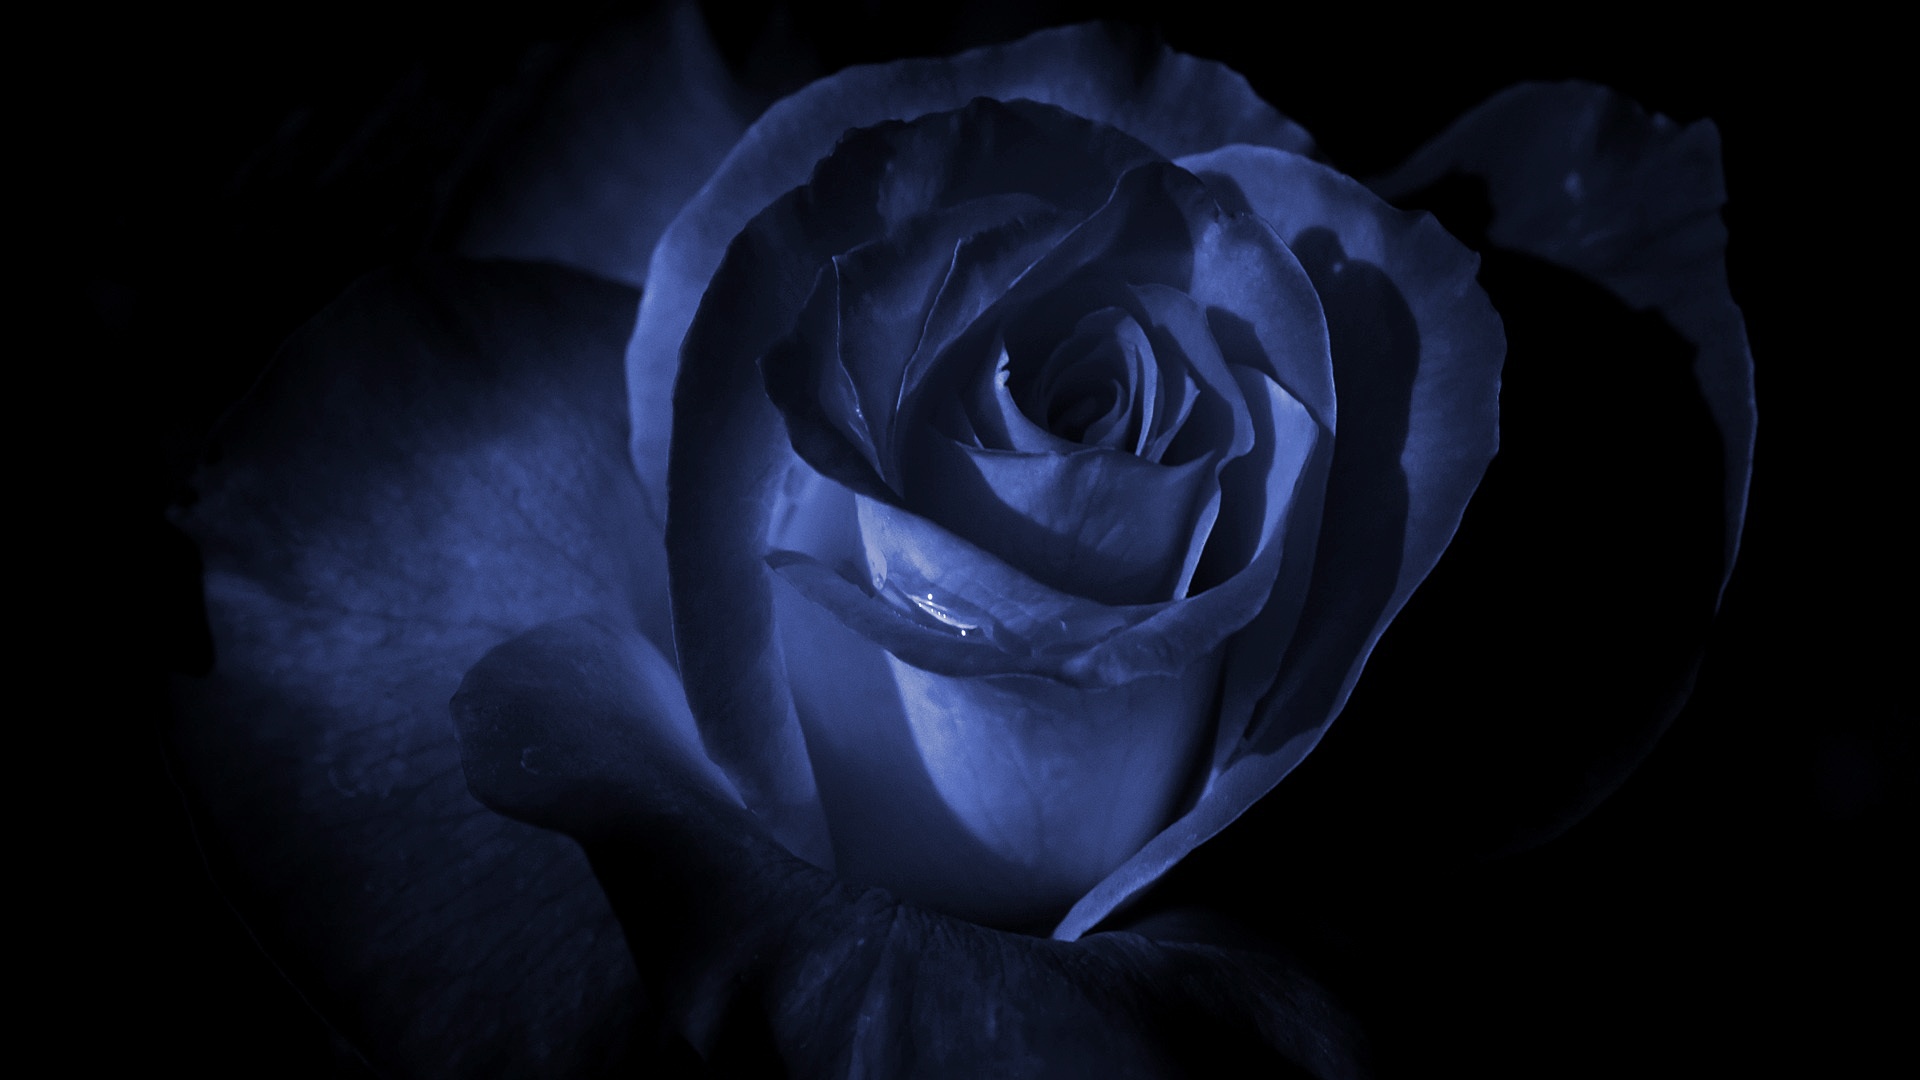 玫瑰 花 黑暗的 - Pixabay上的免费图片 - Pixabay